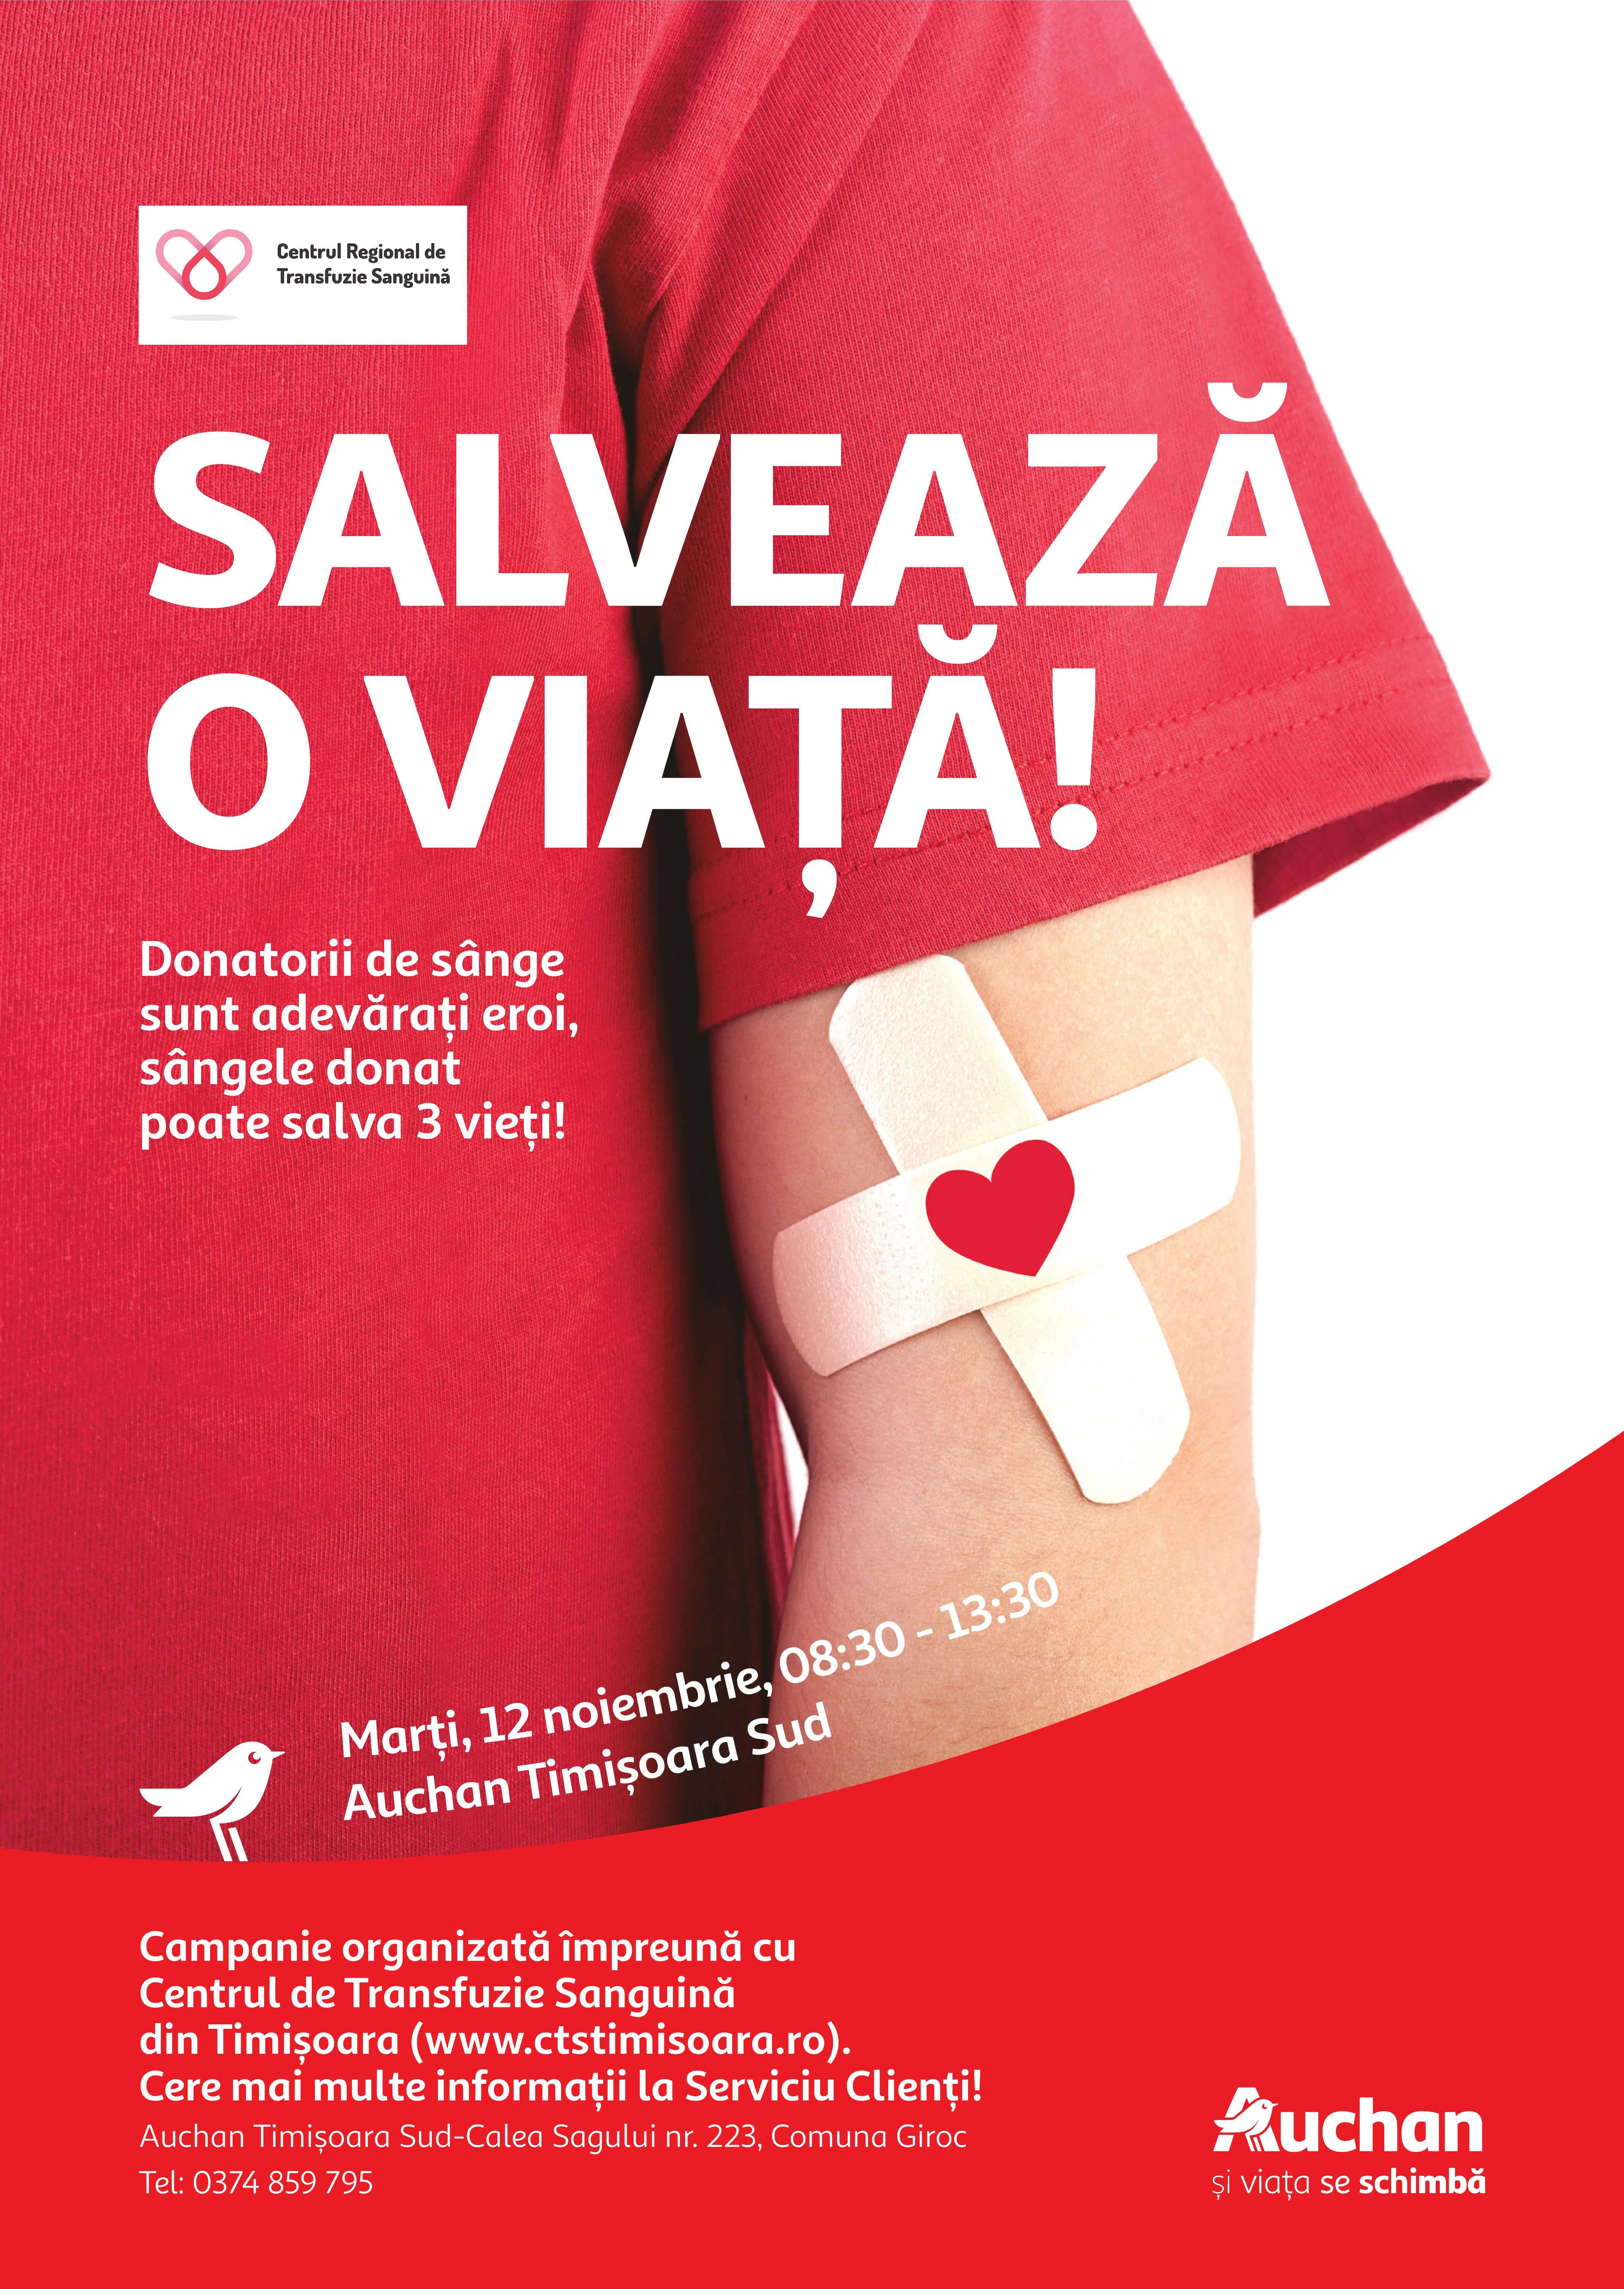 Sângele donat poate salva 3 vieți!